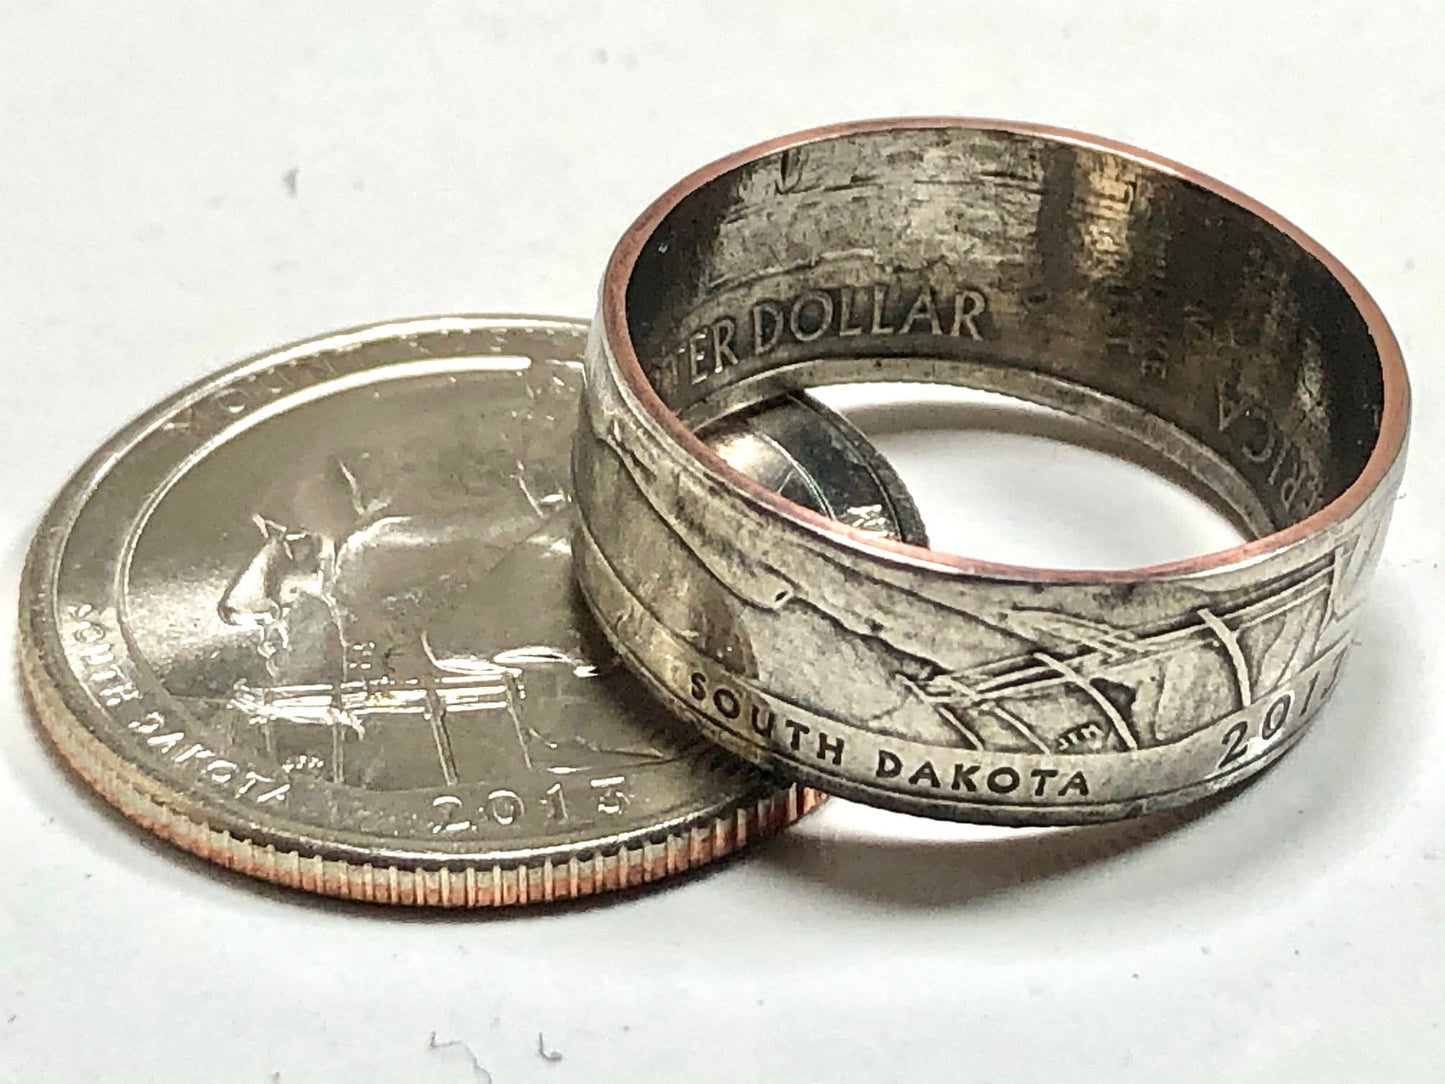 USA Ring South Dakota Mount Rushmore Quarter Coin Ring